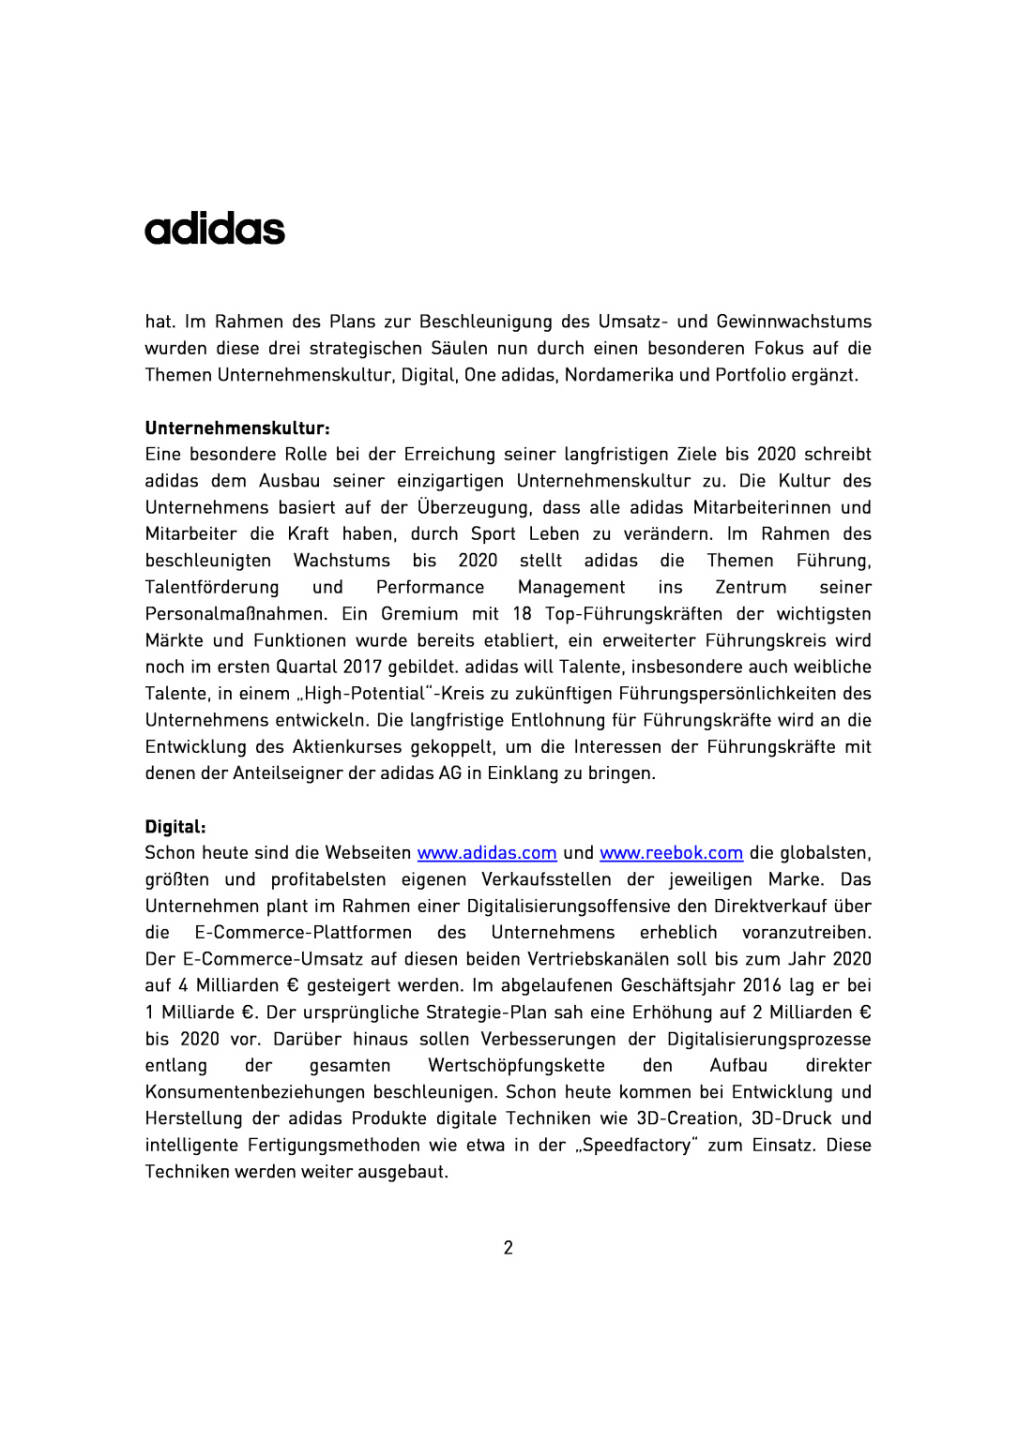 adidas erhöht Umsatz- und Gewinnziele bis 2020, Seite 2/5, komplettes Dokument unter http://boerse-social.com/static/uploads/file_2145_adidas_erhoht_umsatz-_und_gewinnziele_bis_2020.pdf